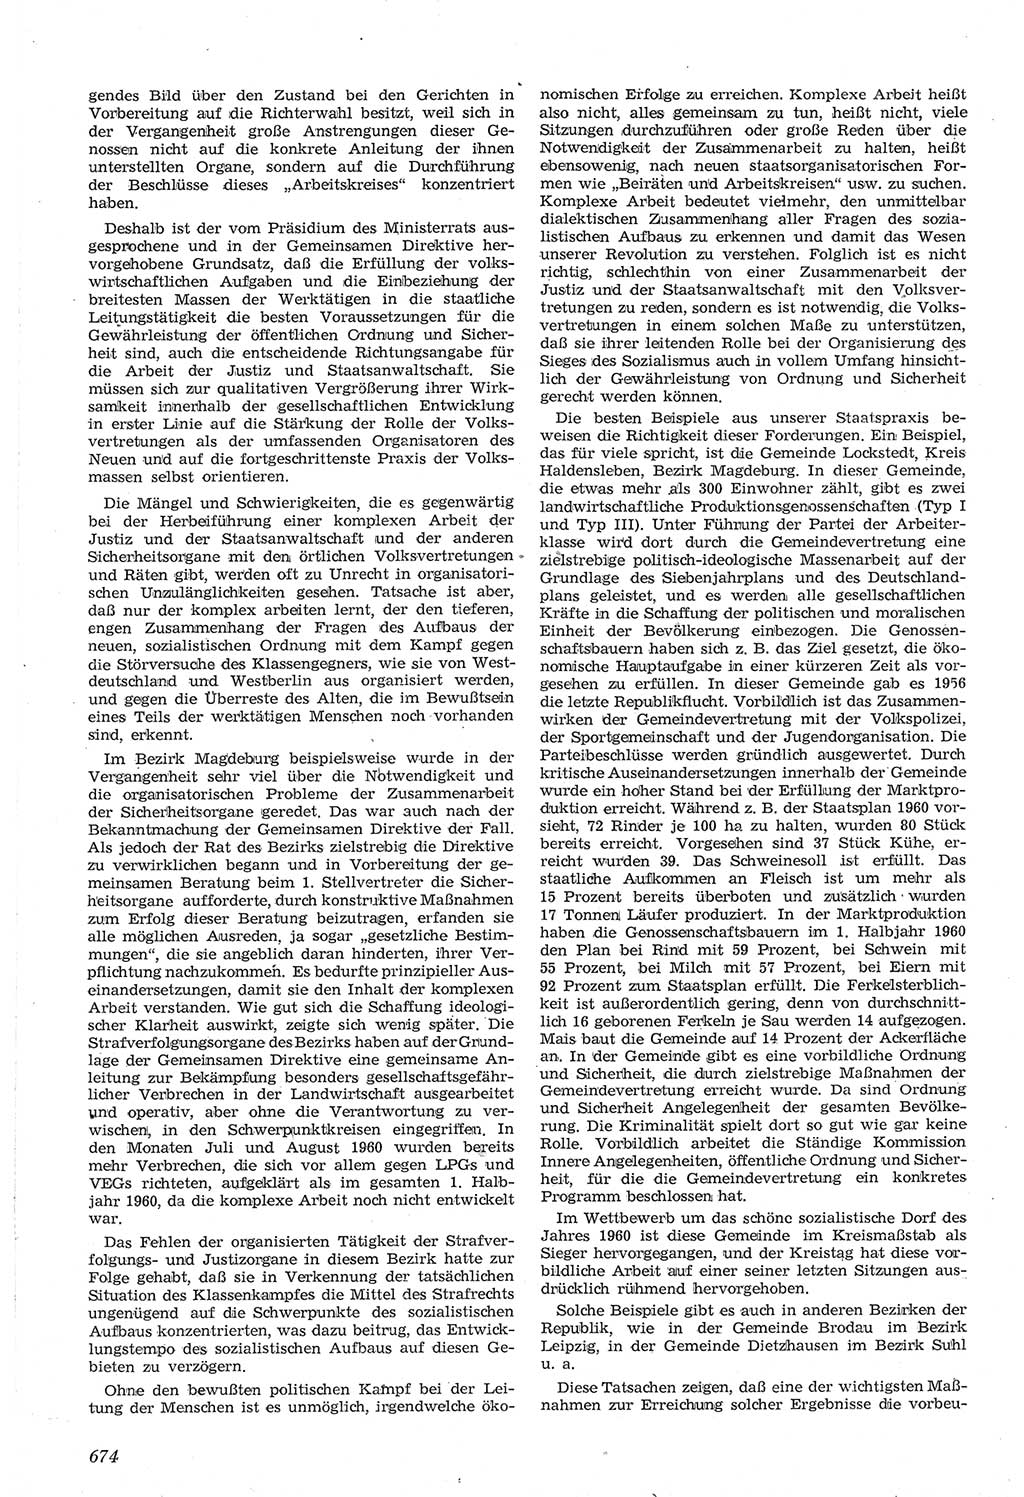 Neue Justiz (NJ), Zeitschrift für Recht und Rechtswissenschaft [Deutsche Demokratische Republik (DDR)], 14. Jahrgang 1960, Seite 674 (NJ DDR 1960, S. 674)